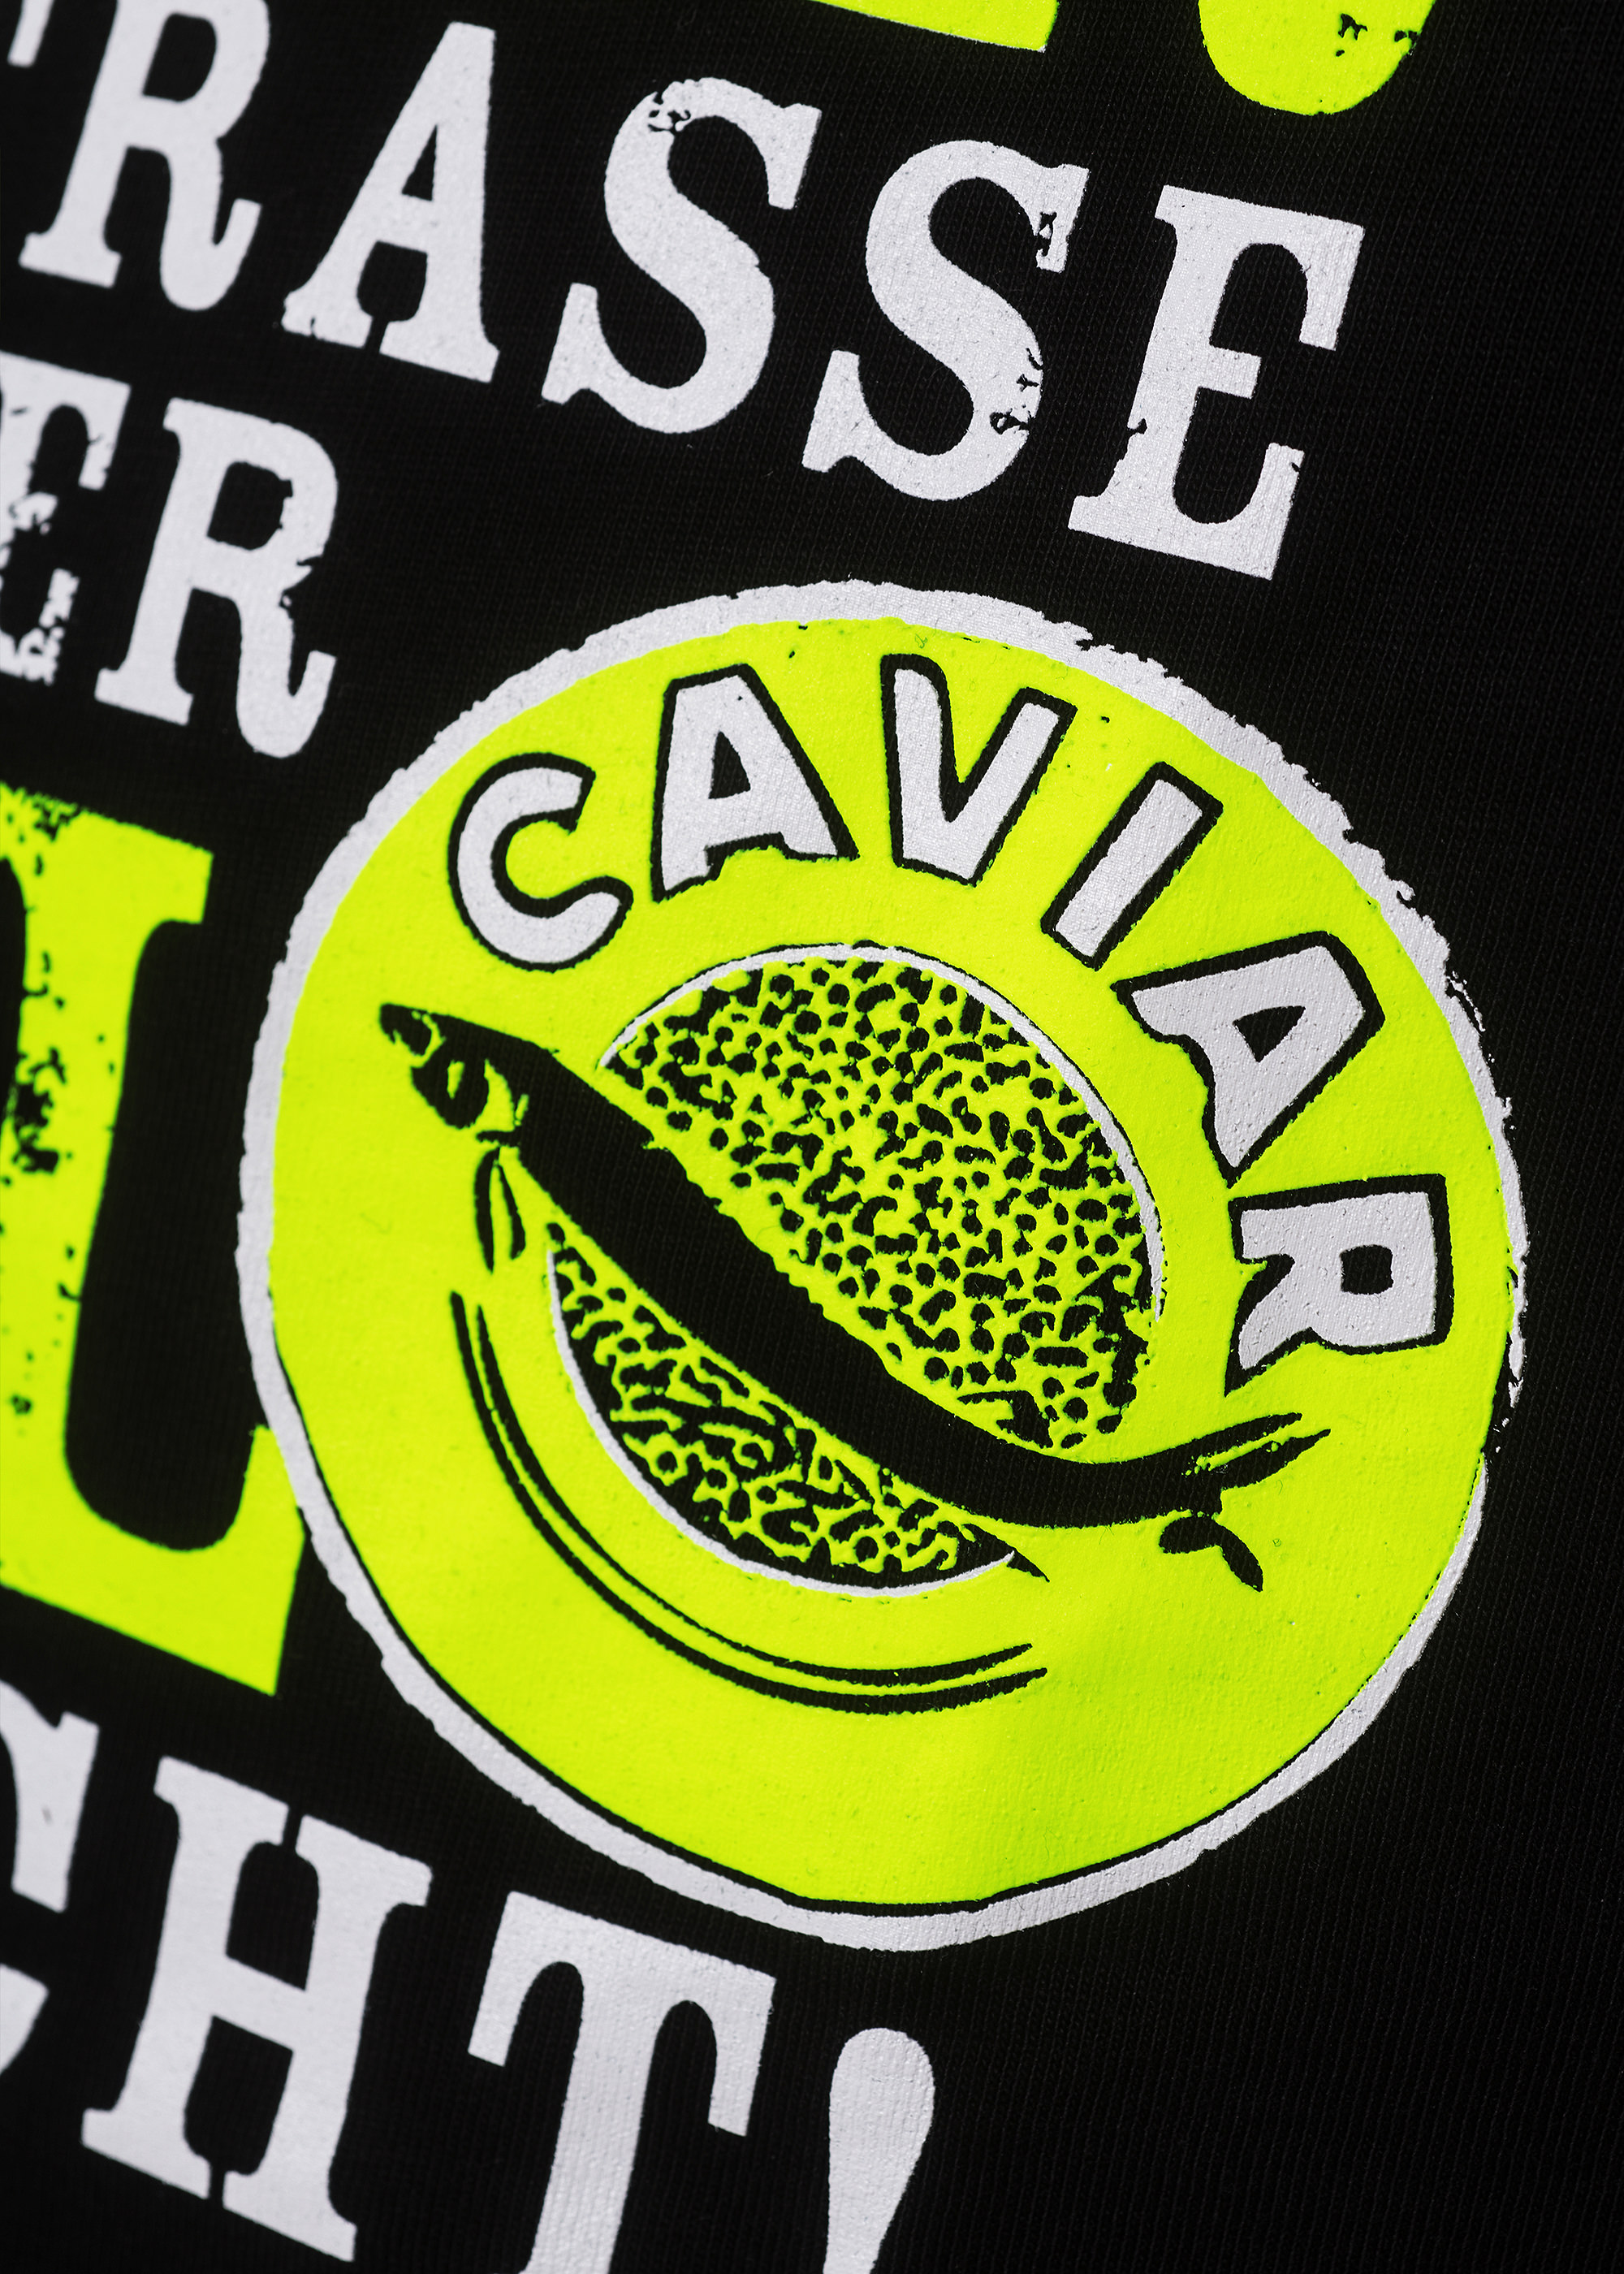 Schmeisst den Kaviar - Unisex-Shirt